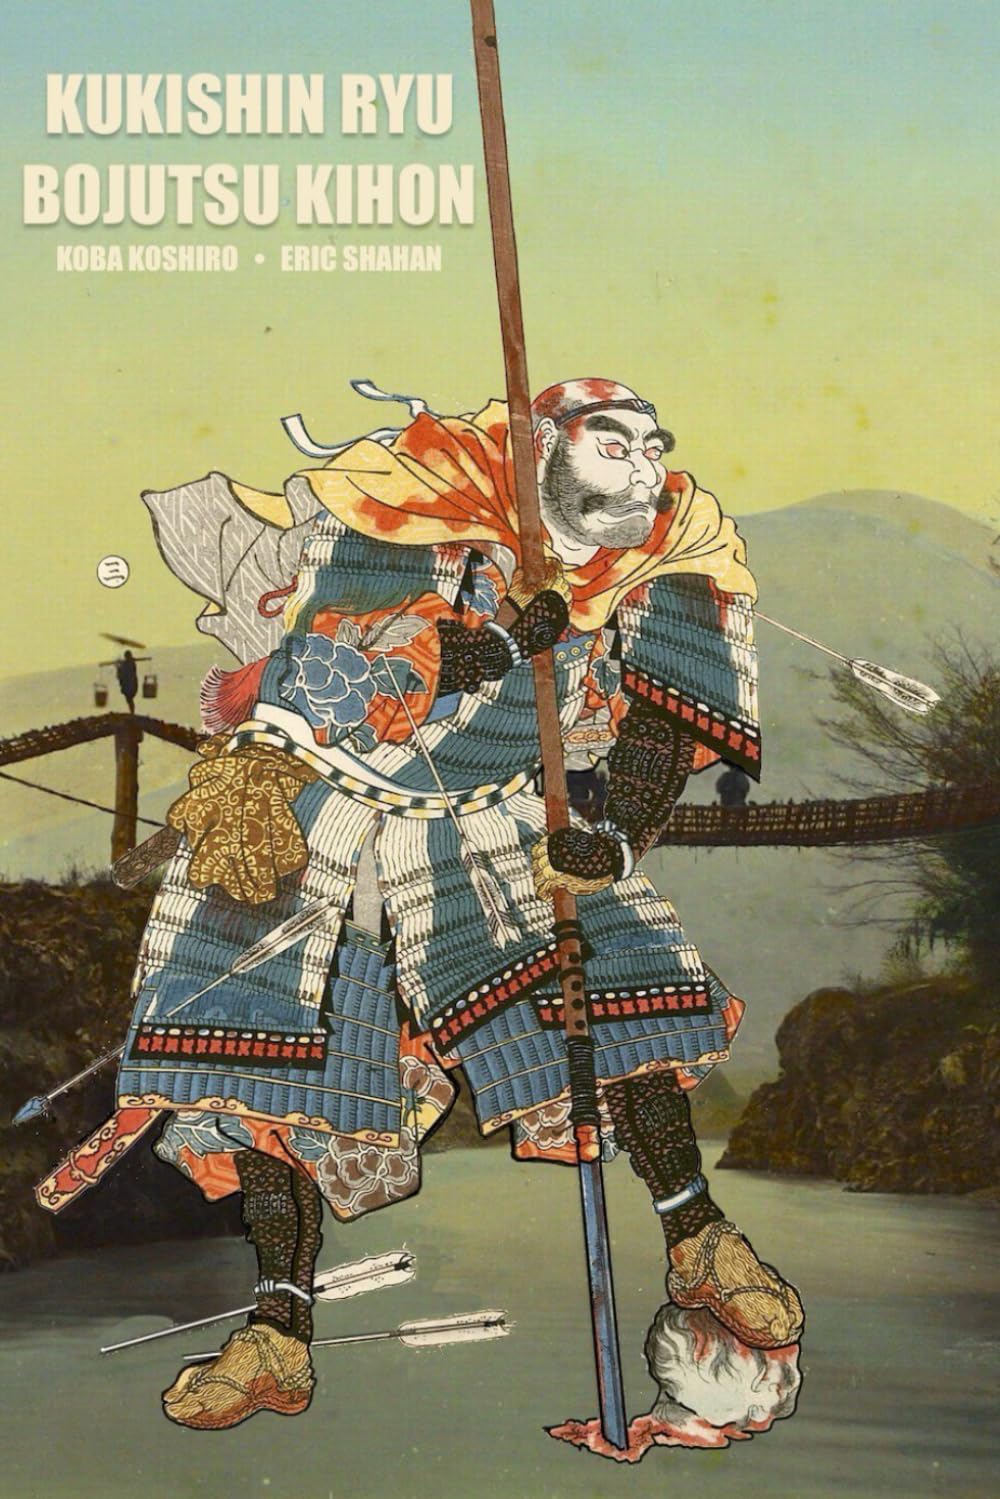 Kukishin Ryu: Bojutsu Kihon Book by Koba Koshiro